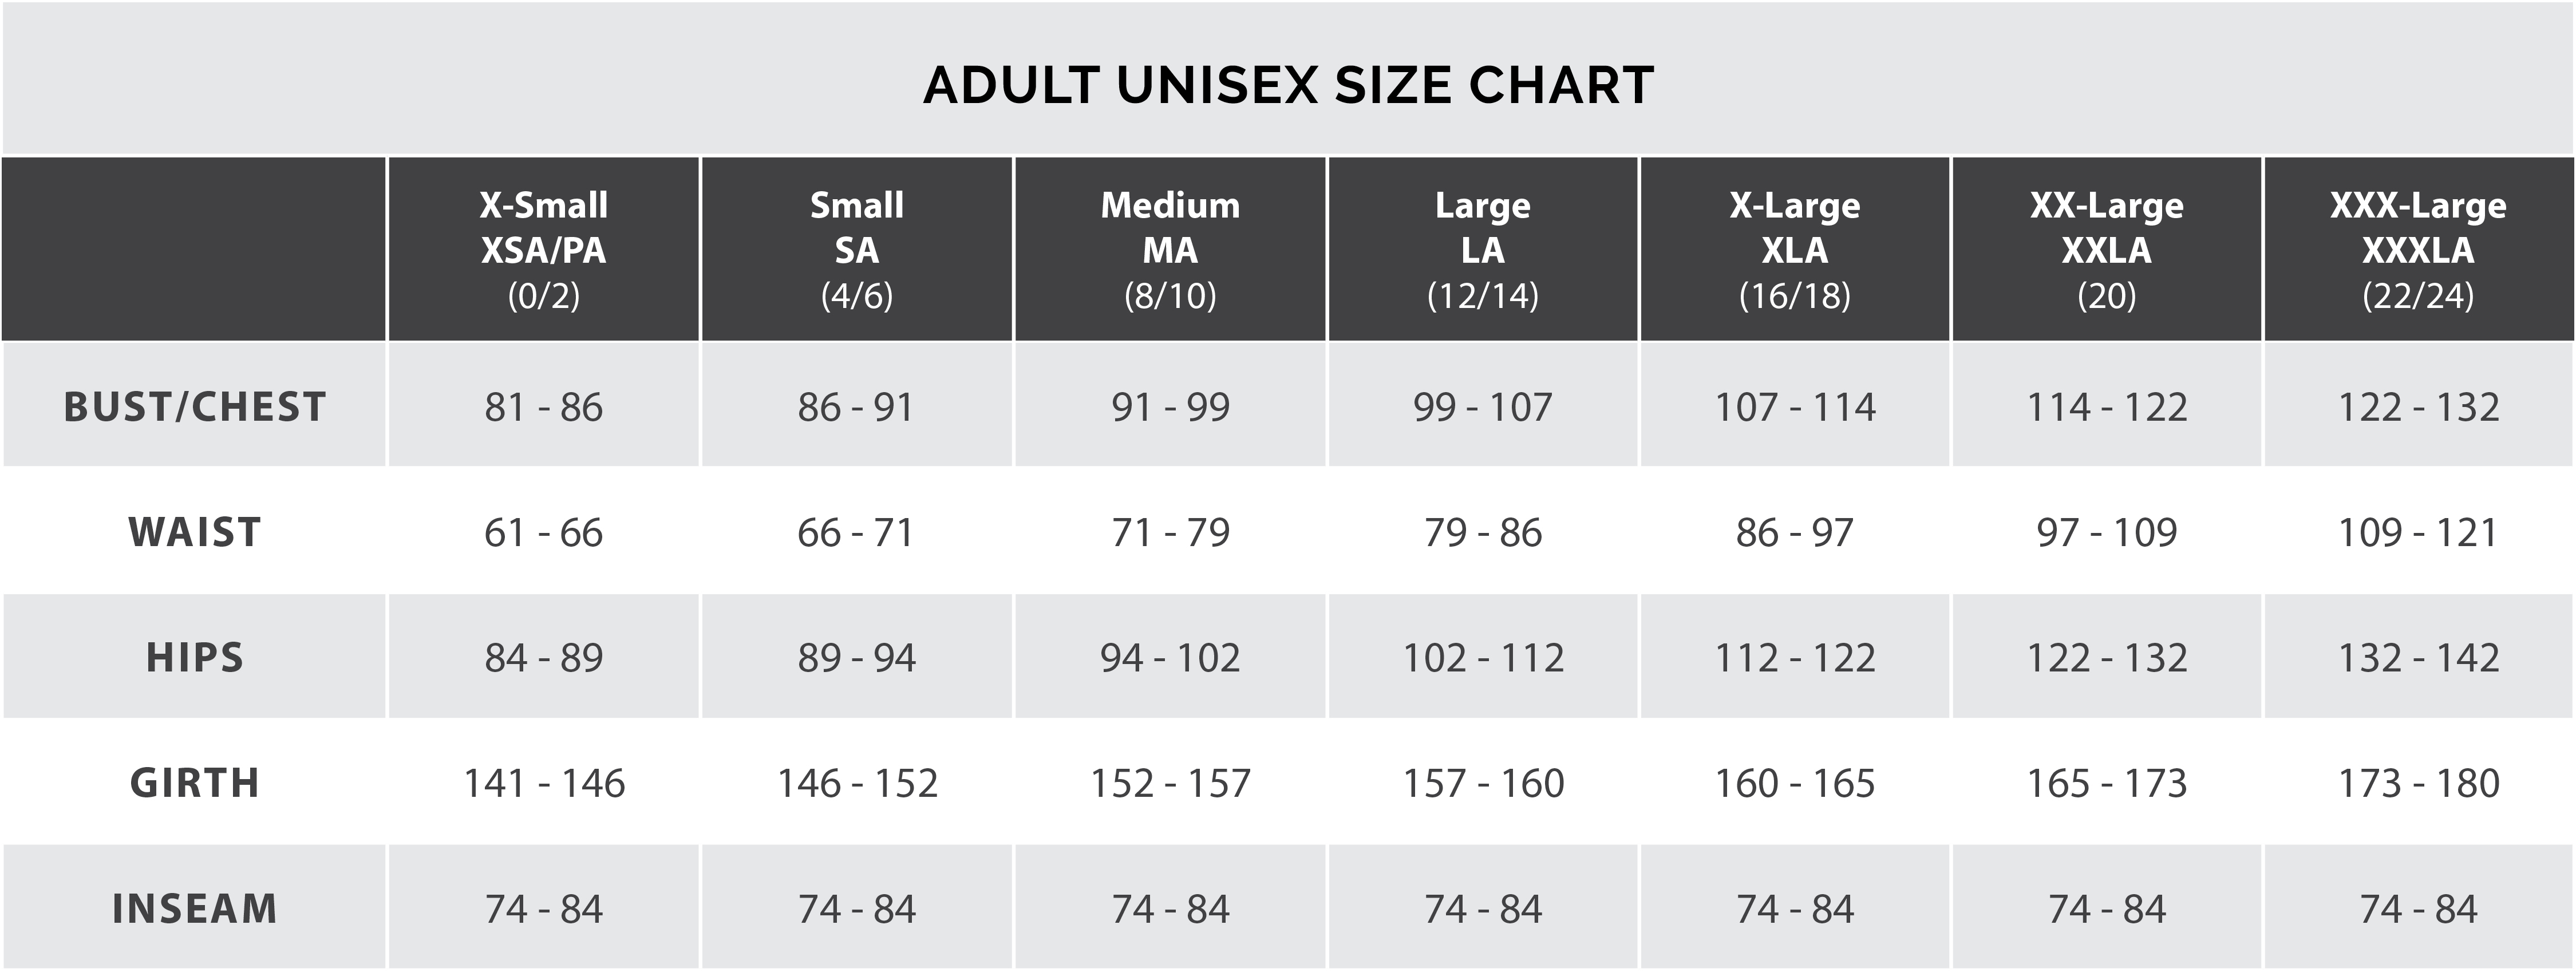 adult unisex size chart centimeters